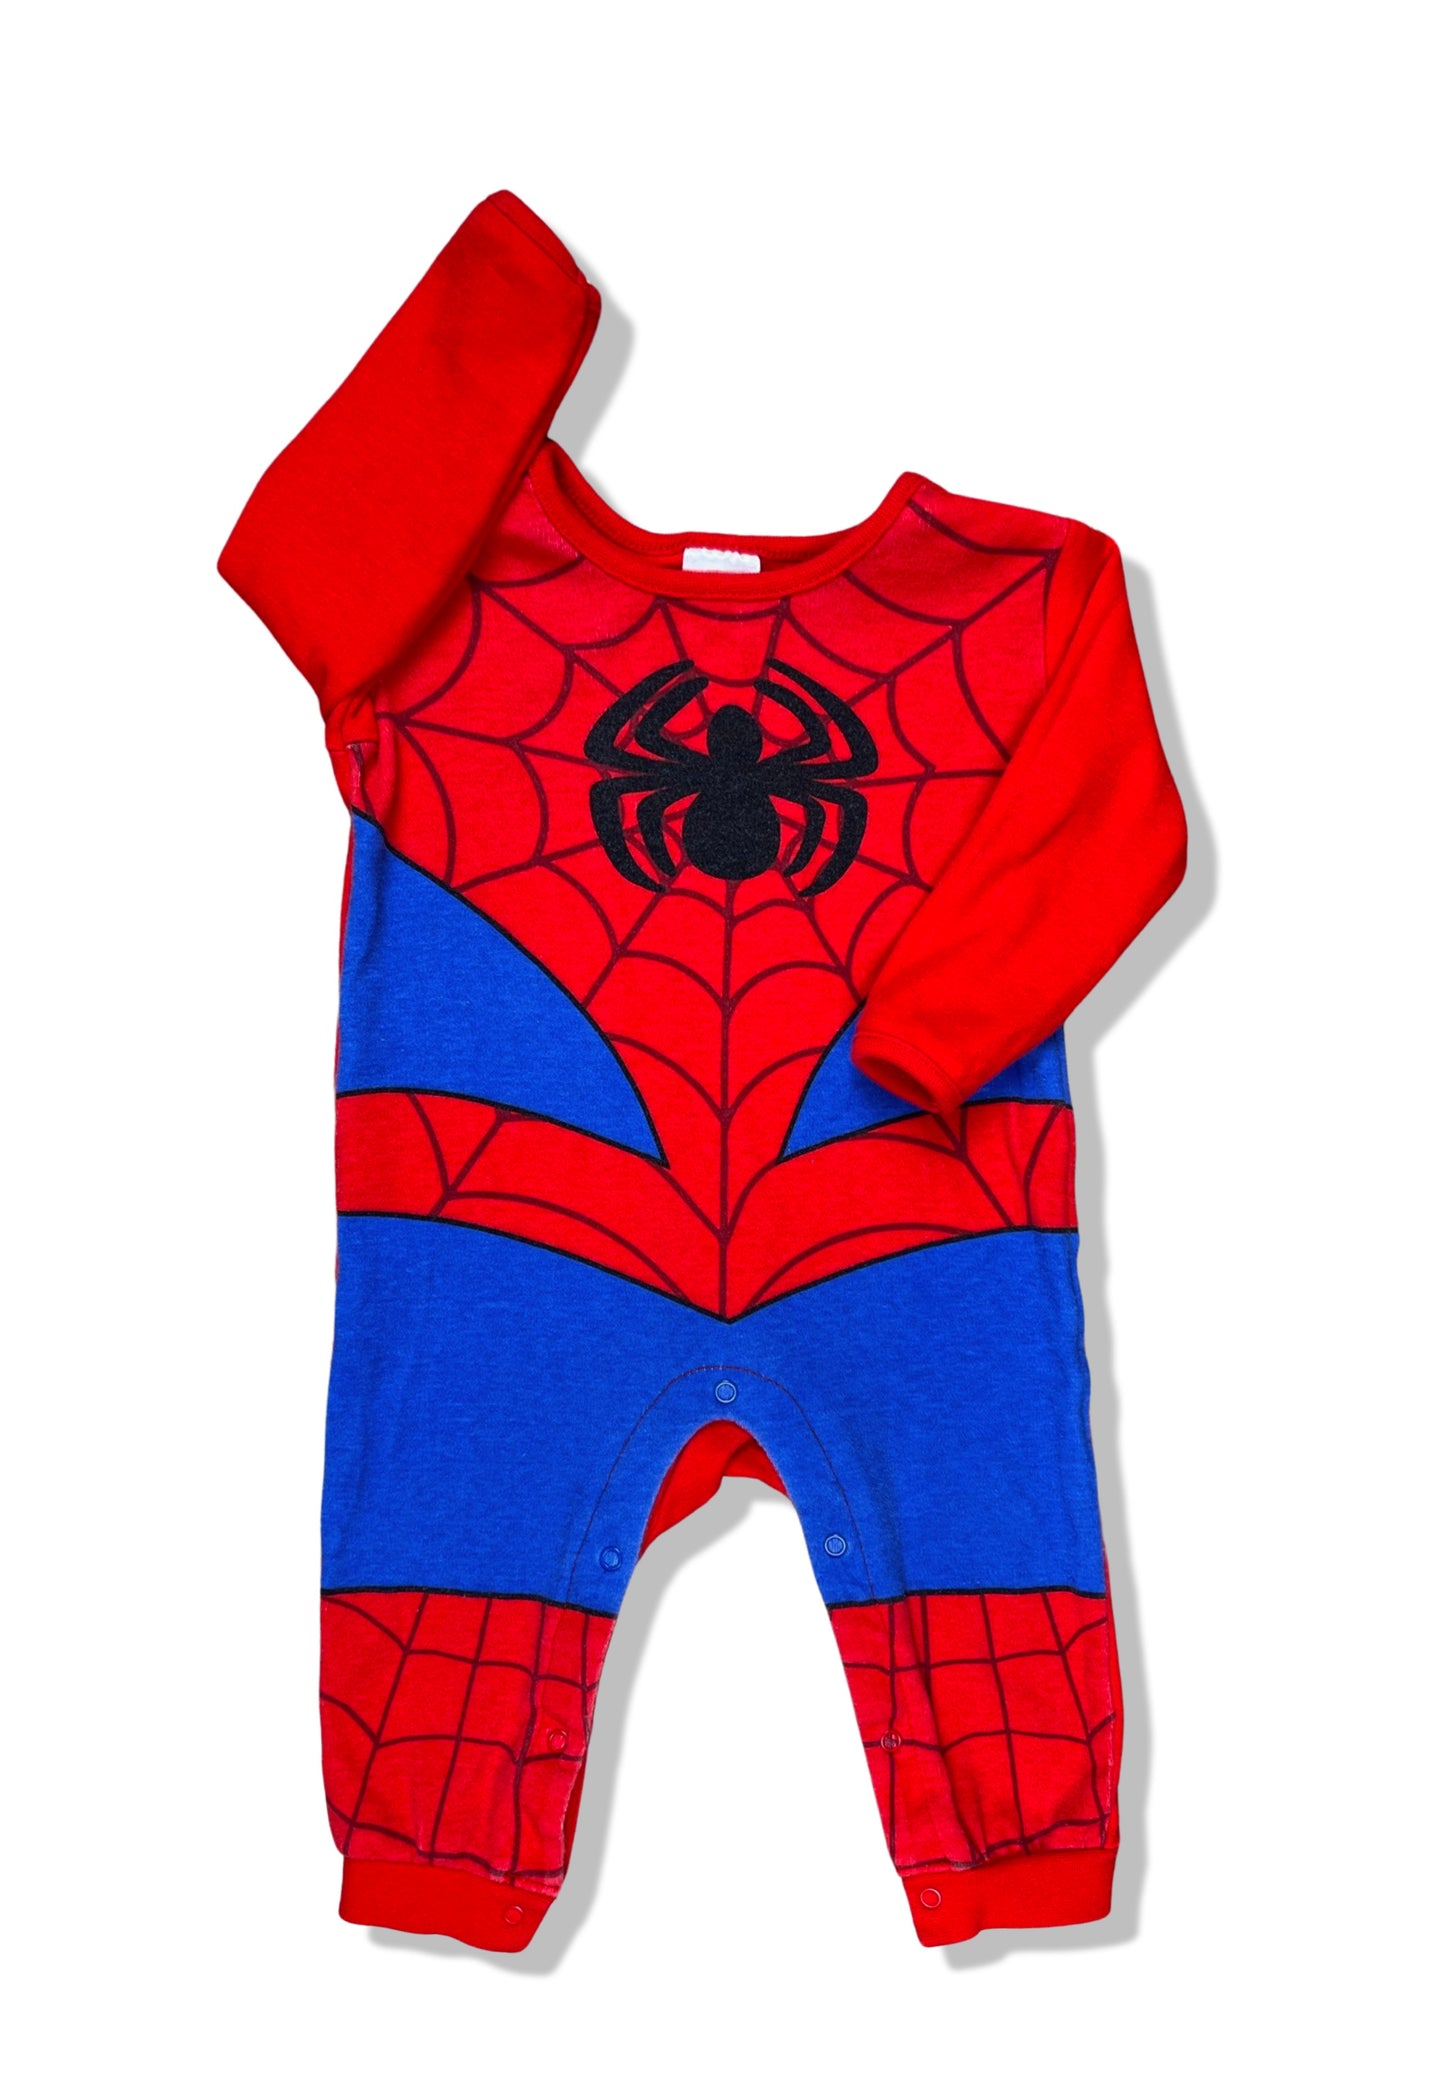 Spider-Man Licensed Onesie 100% Cotton - Size 00